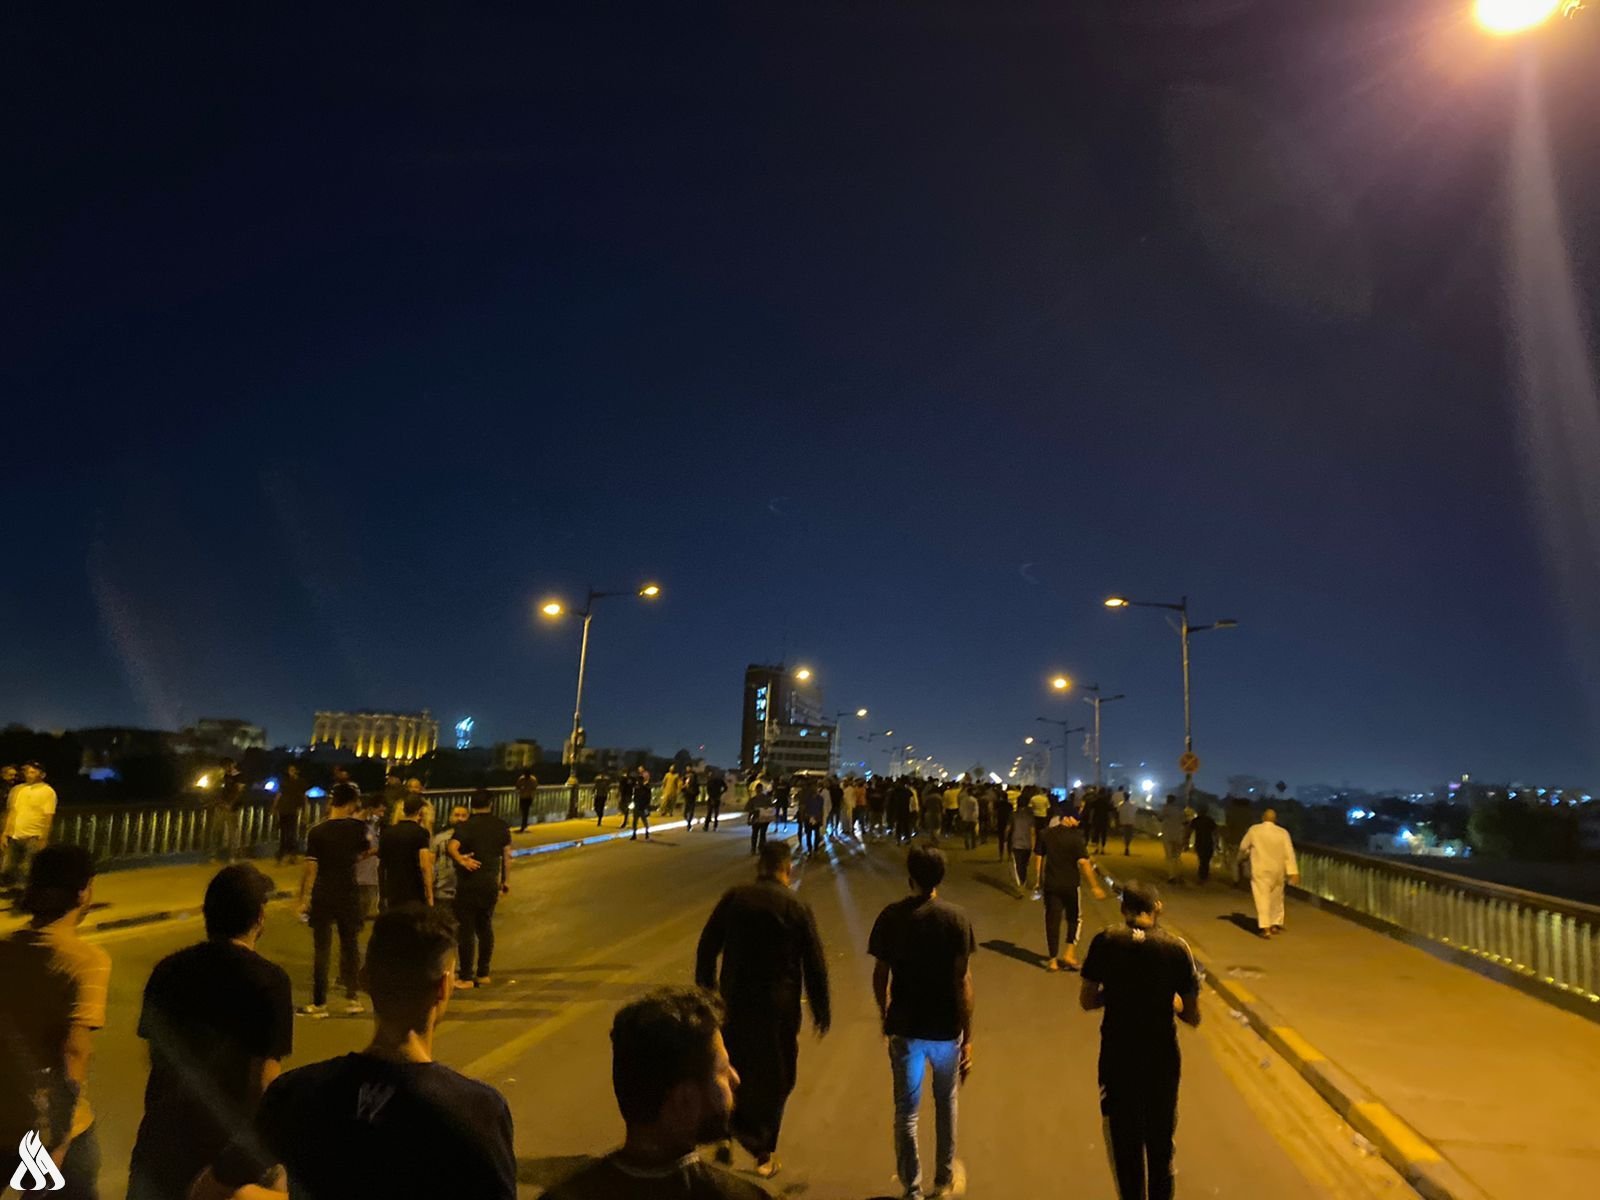 القوات الأمنية تبدأ بفتح الطرق بعد انسحاب المتظاهرين (واع)